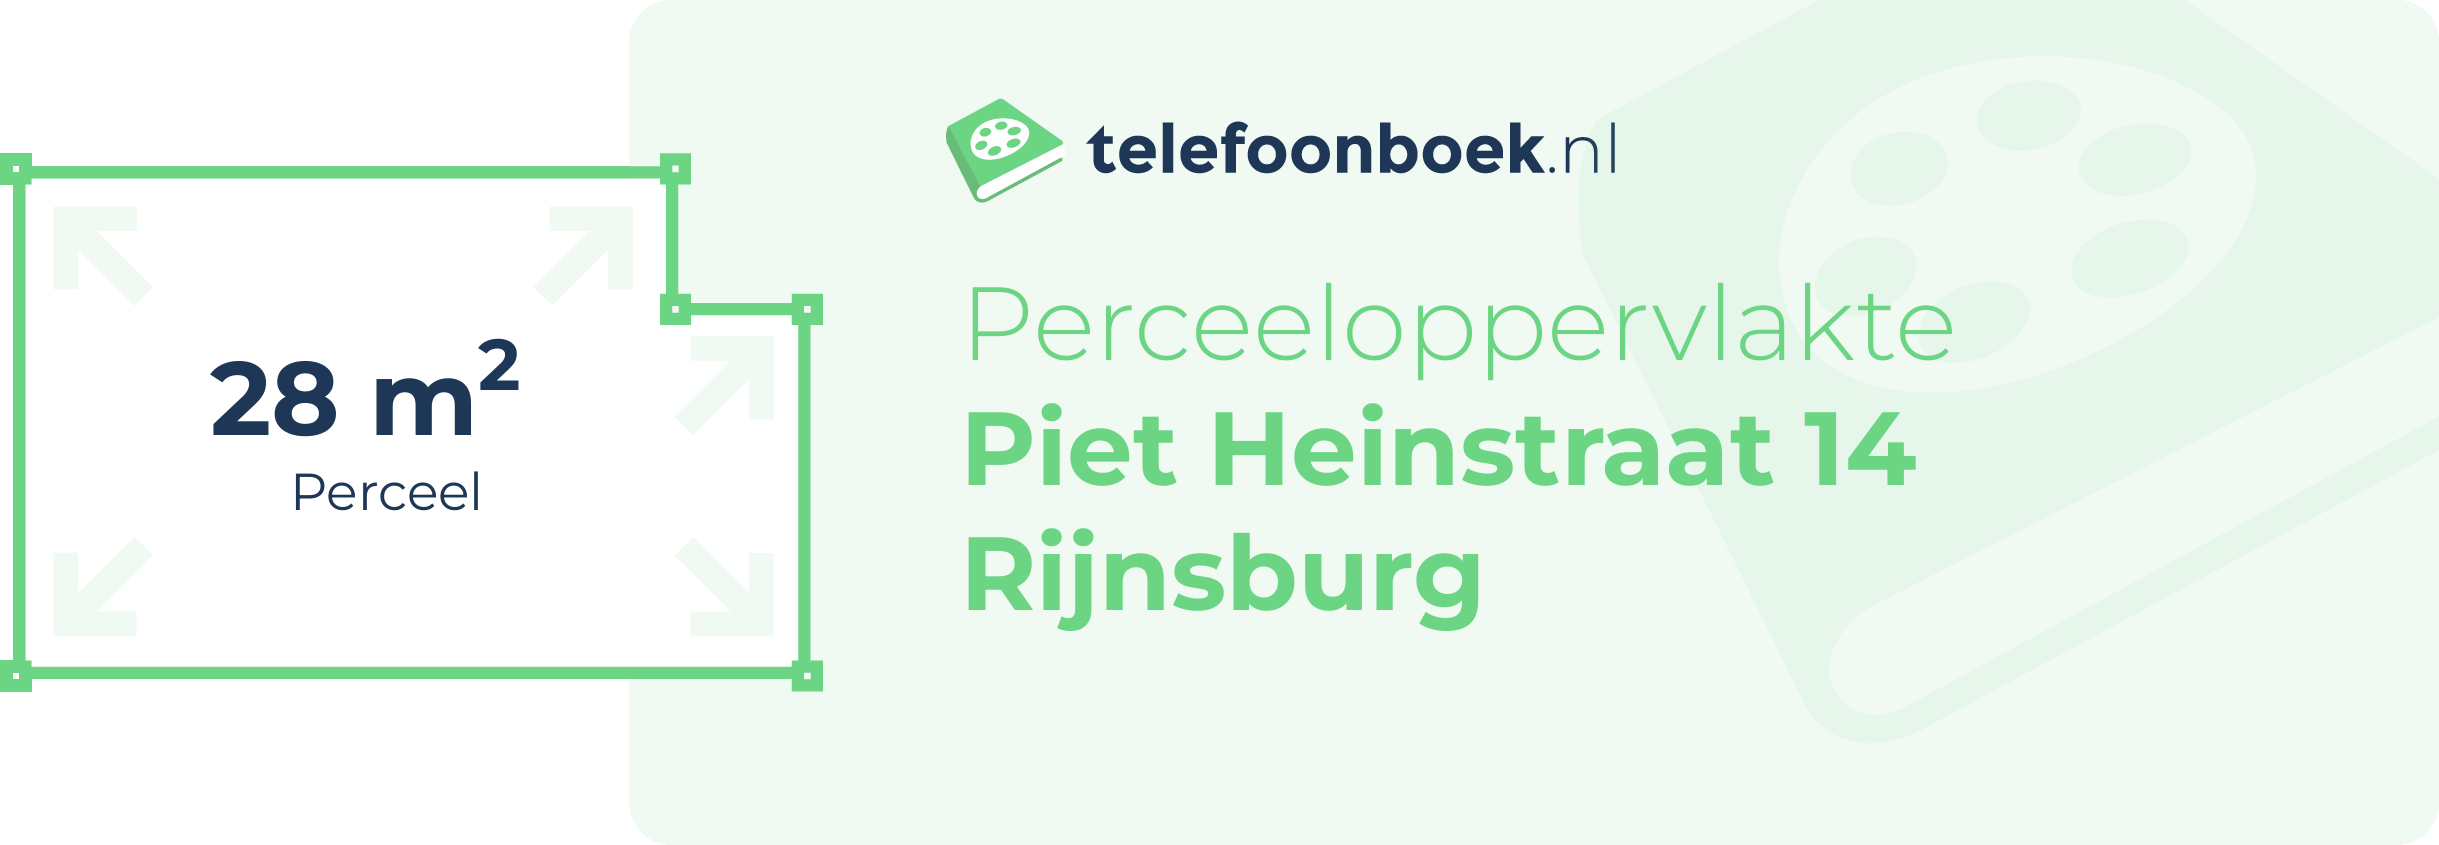 Perceeloppervlakte Piet Heinstraat 14 Rijnsburg